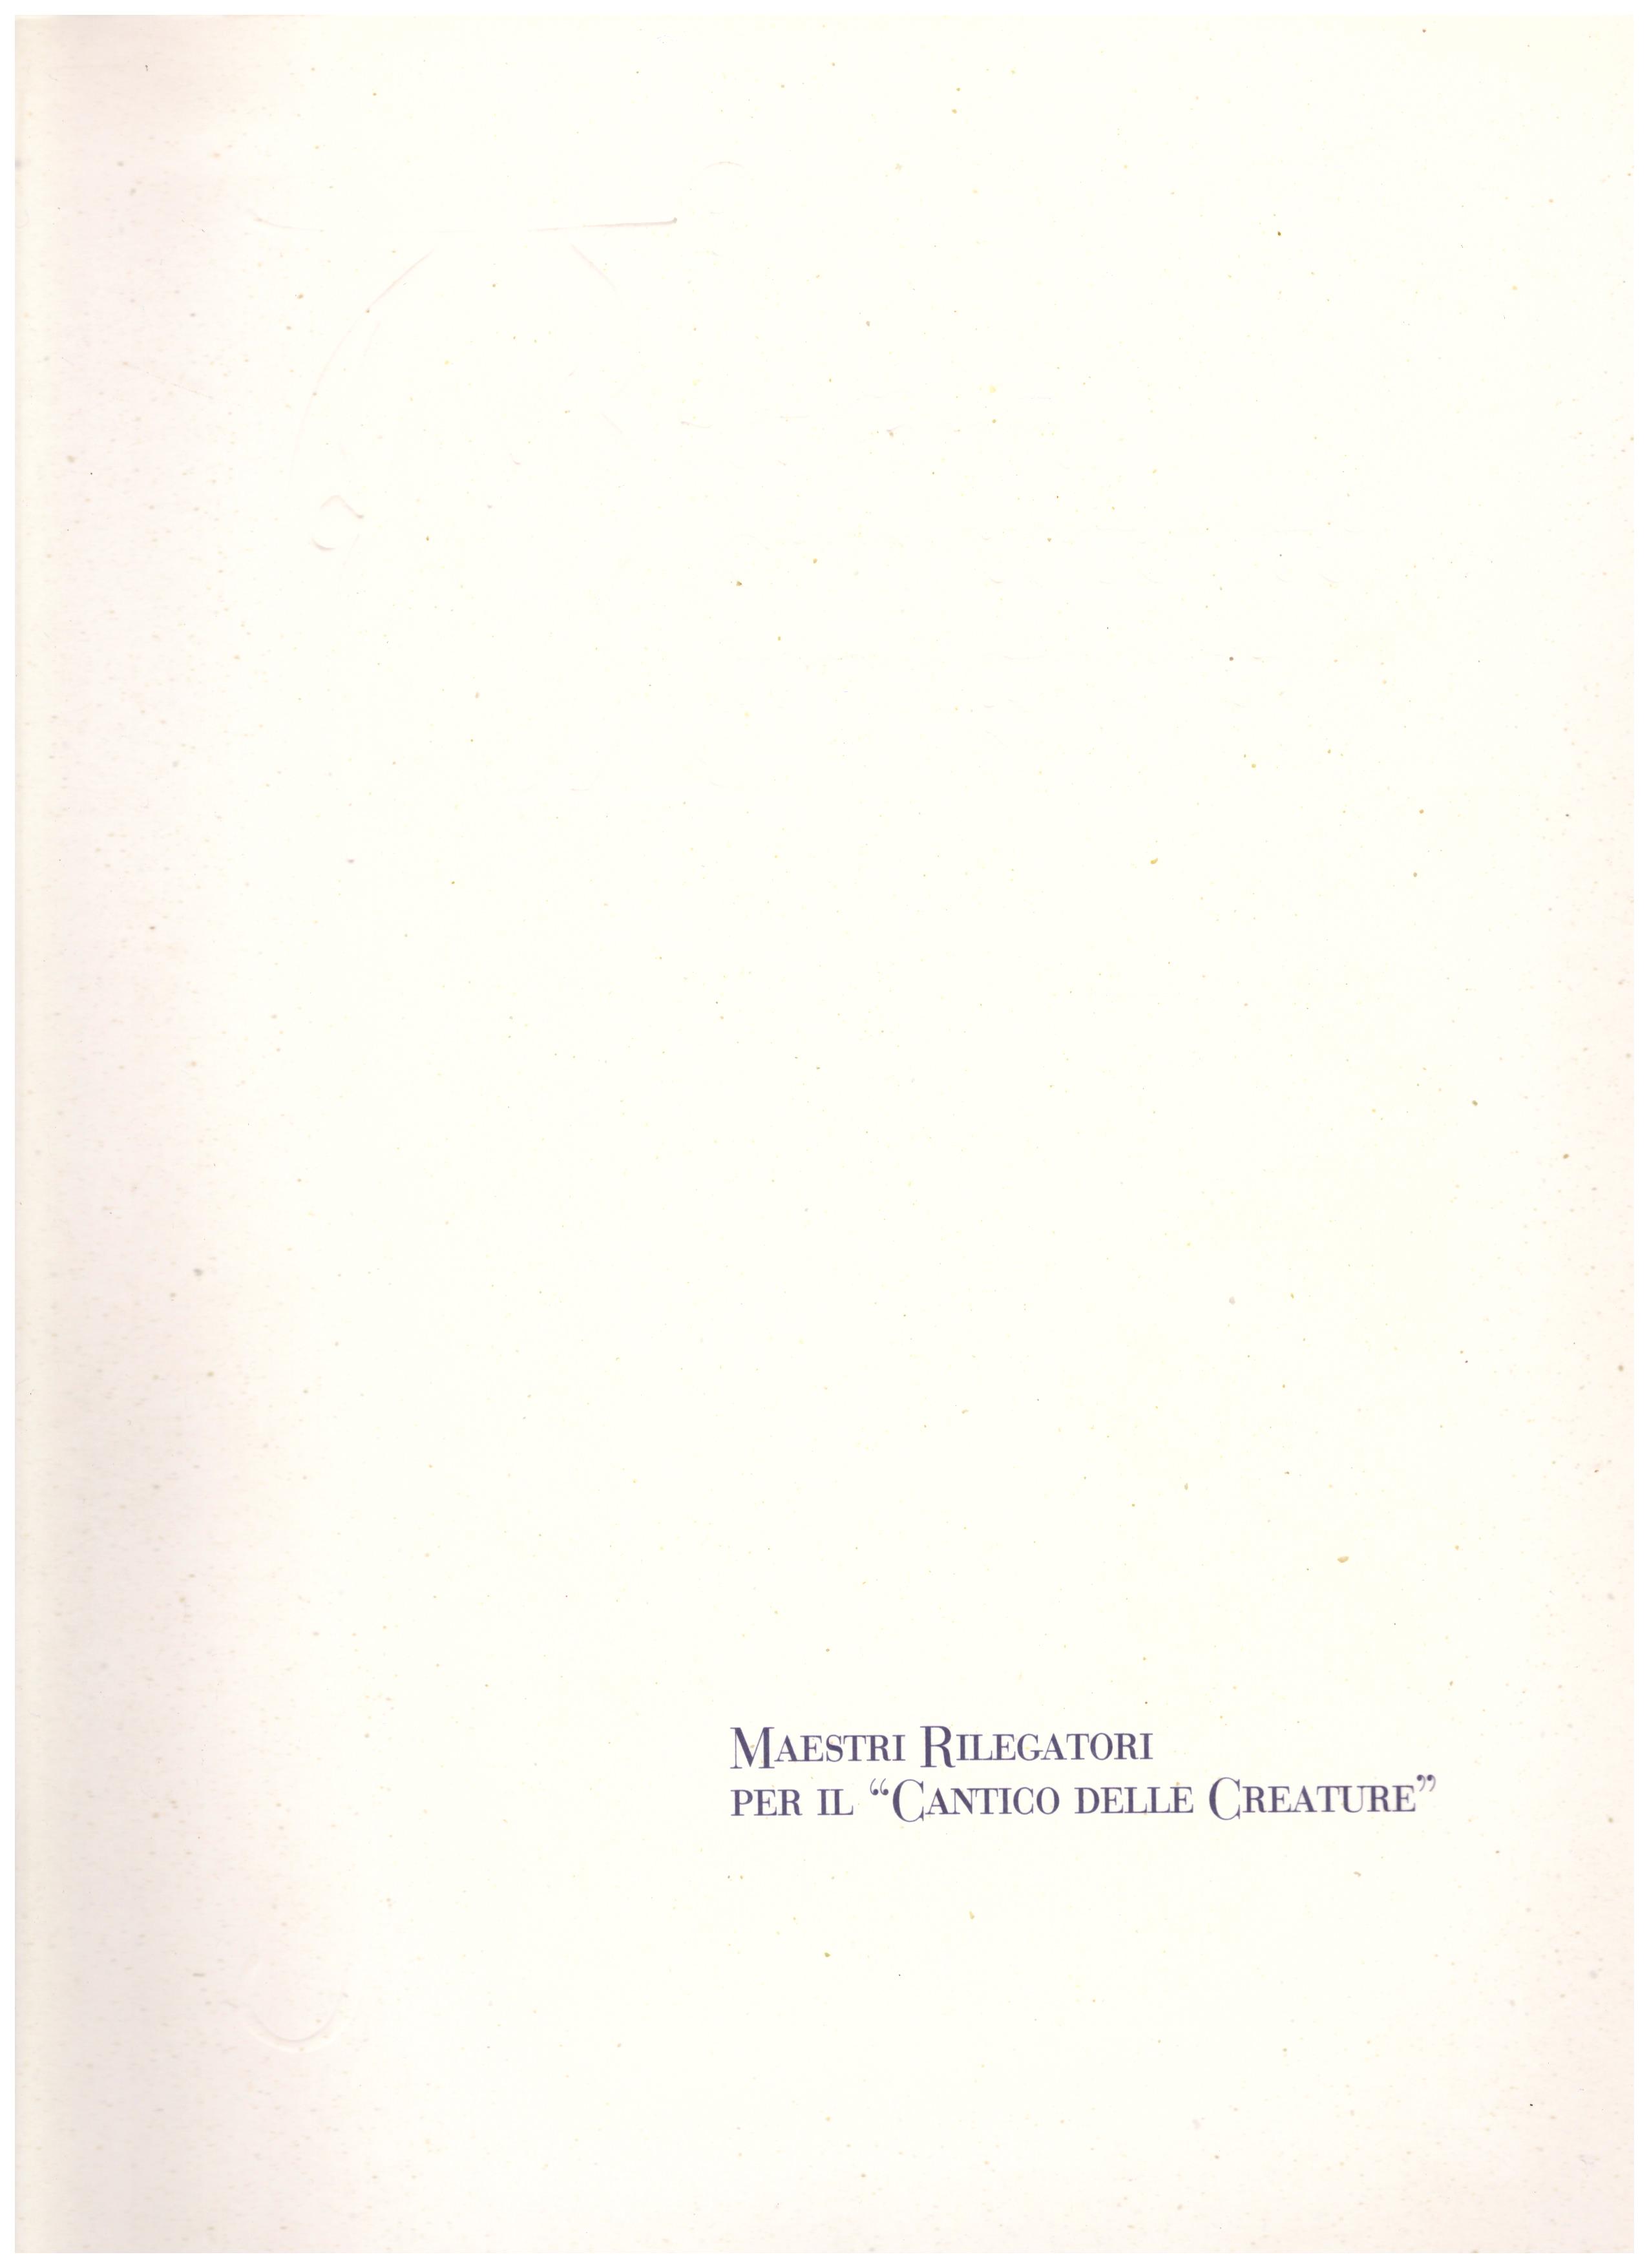 Titolo: Maestri rilegatori per il cantico delle creature  Autore: N.D. Editore: FONDAZIONE CASA DI RISPARMIO MACERATA, 2002